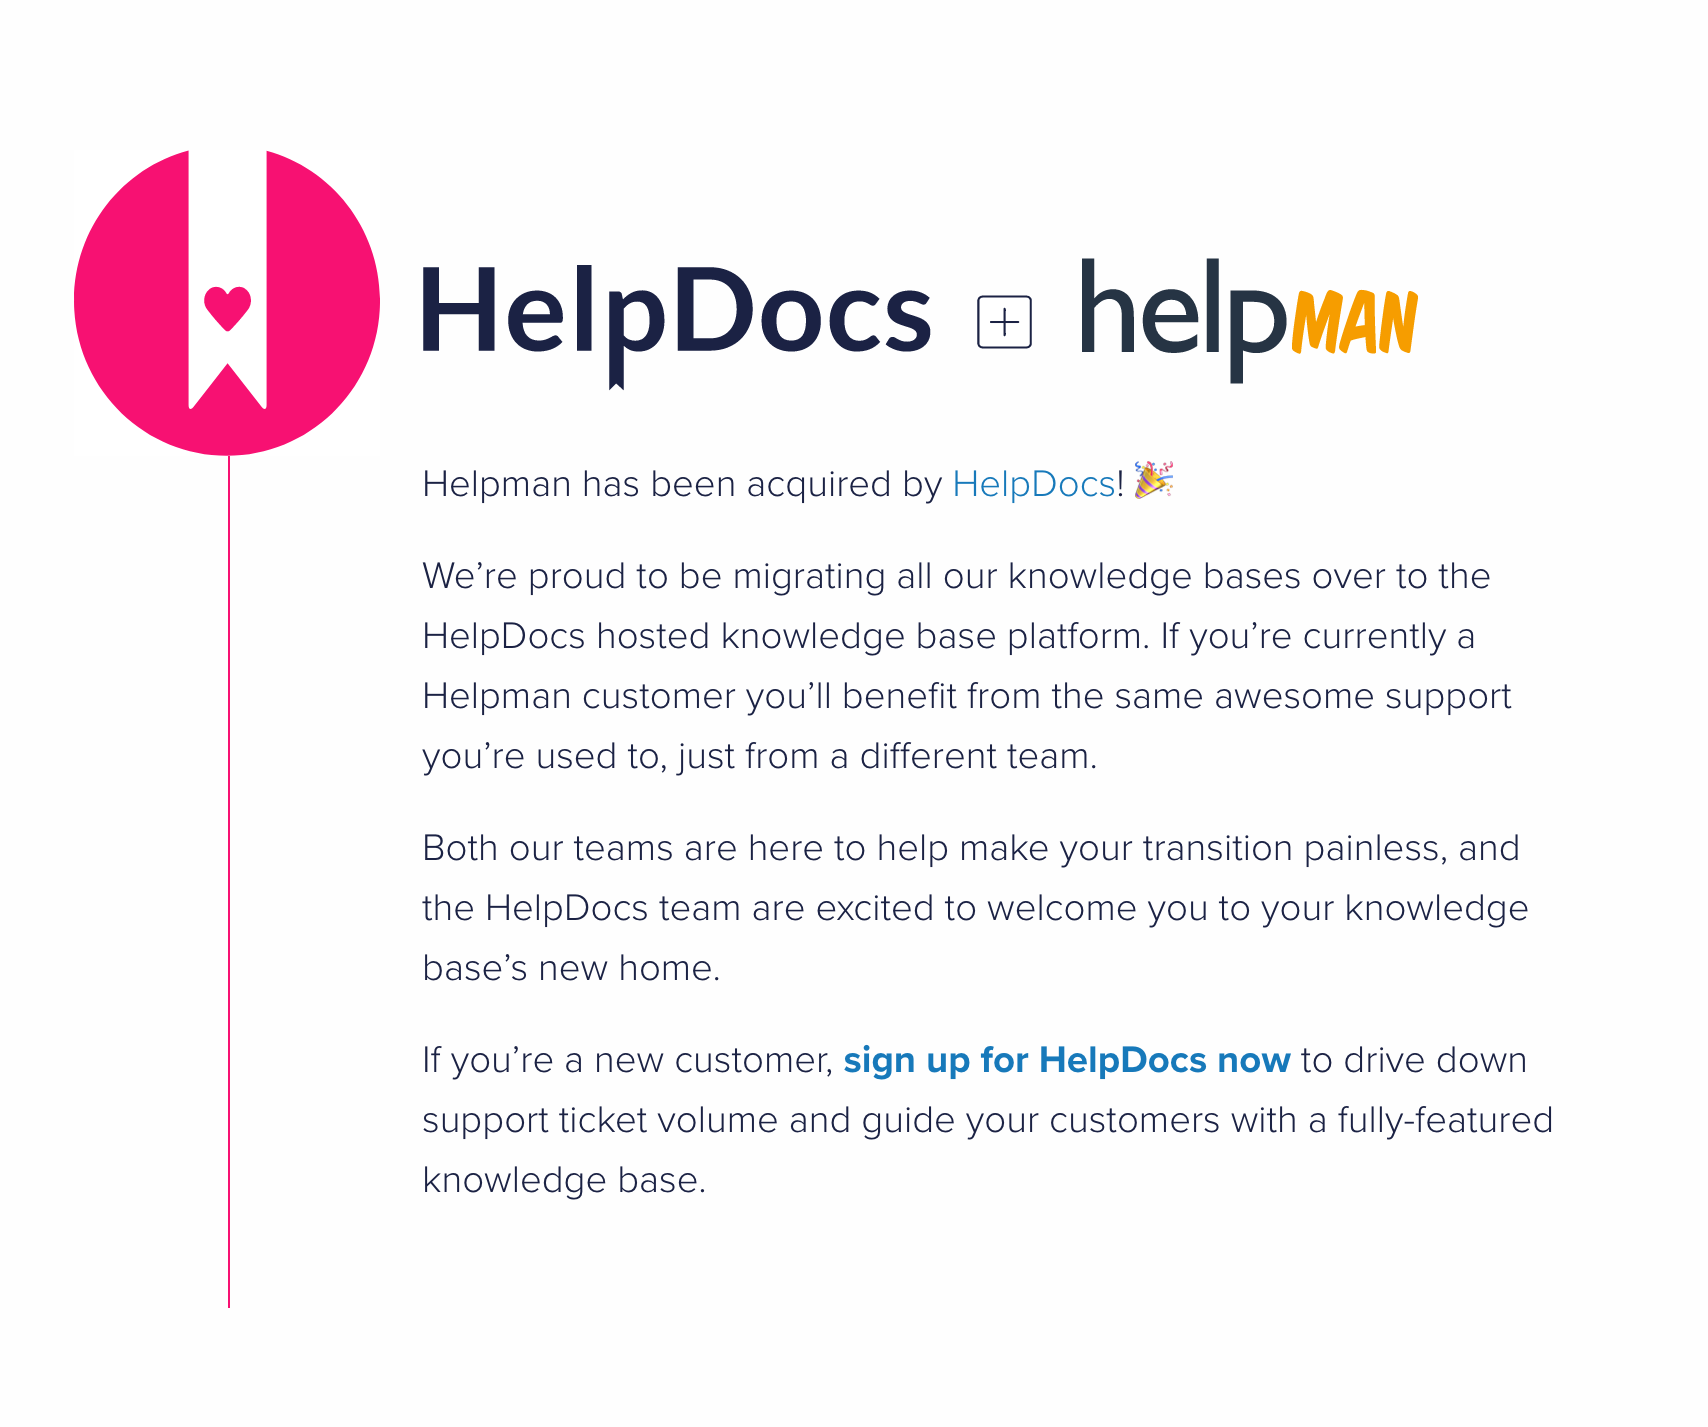 HelpDocs has acquired Helpman